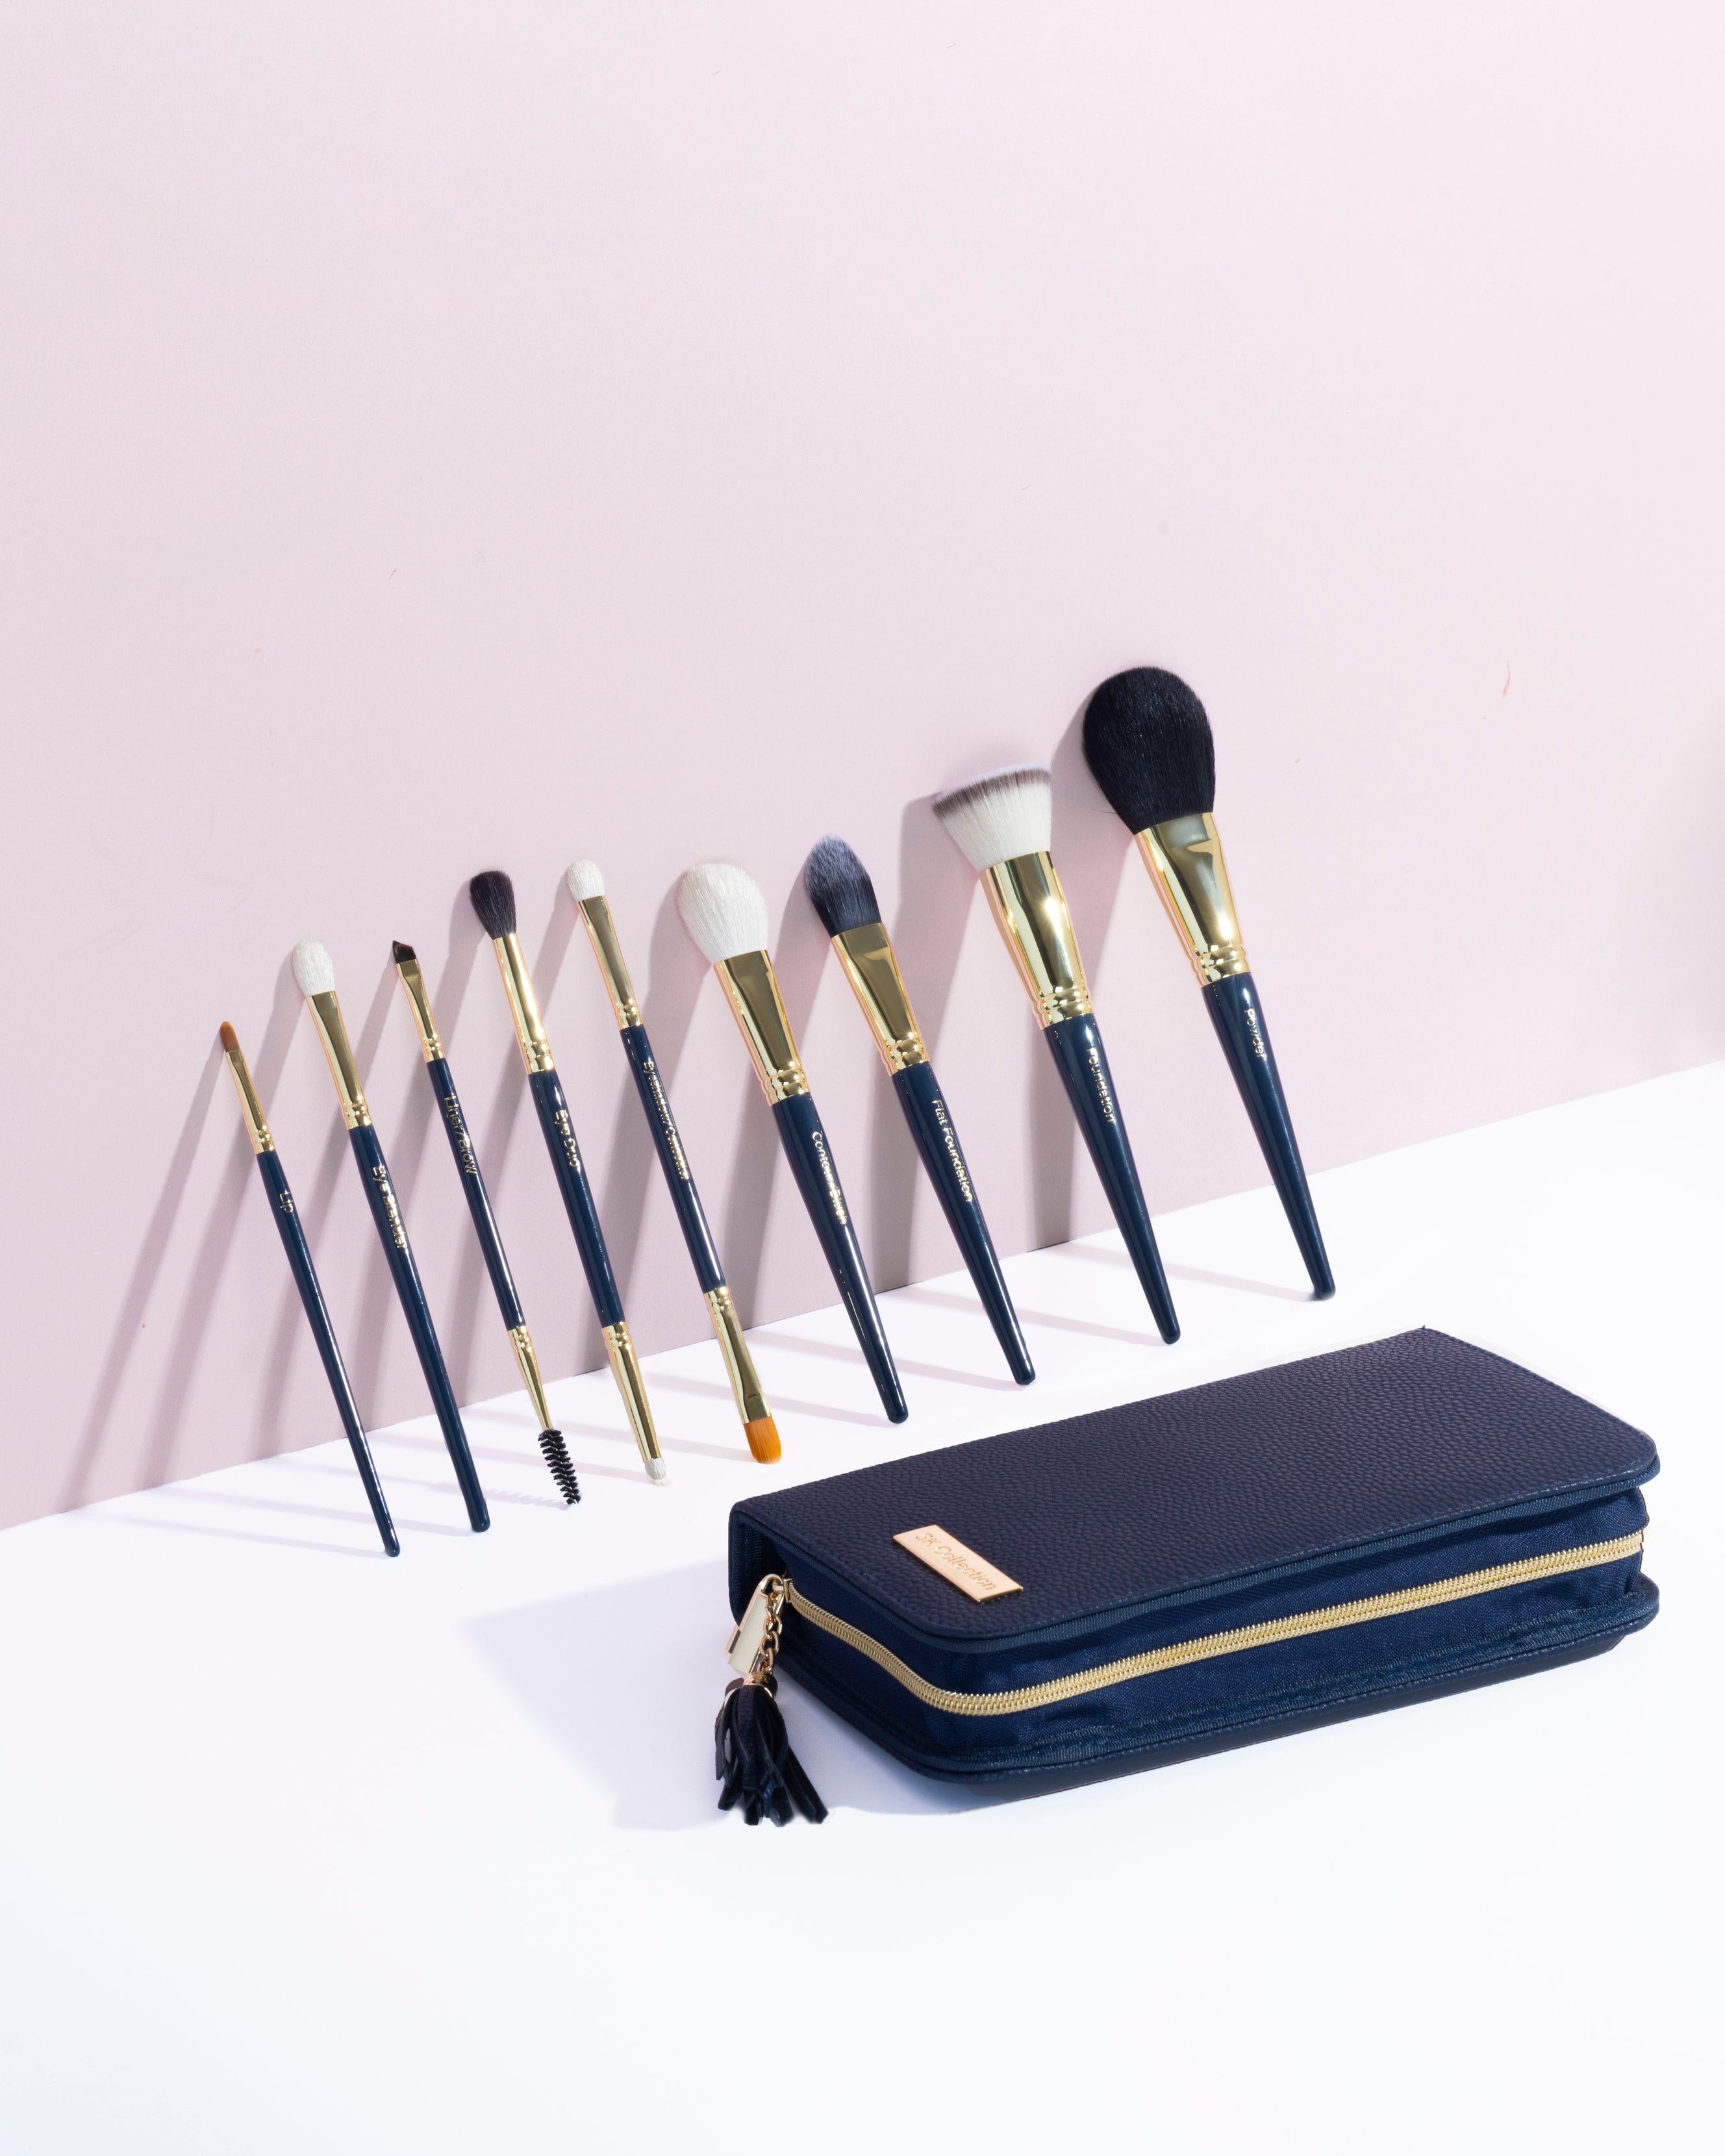 9-Piece Pop-up Professional Makeup Brush Set